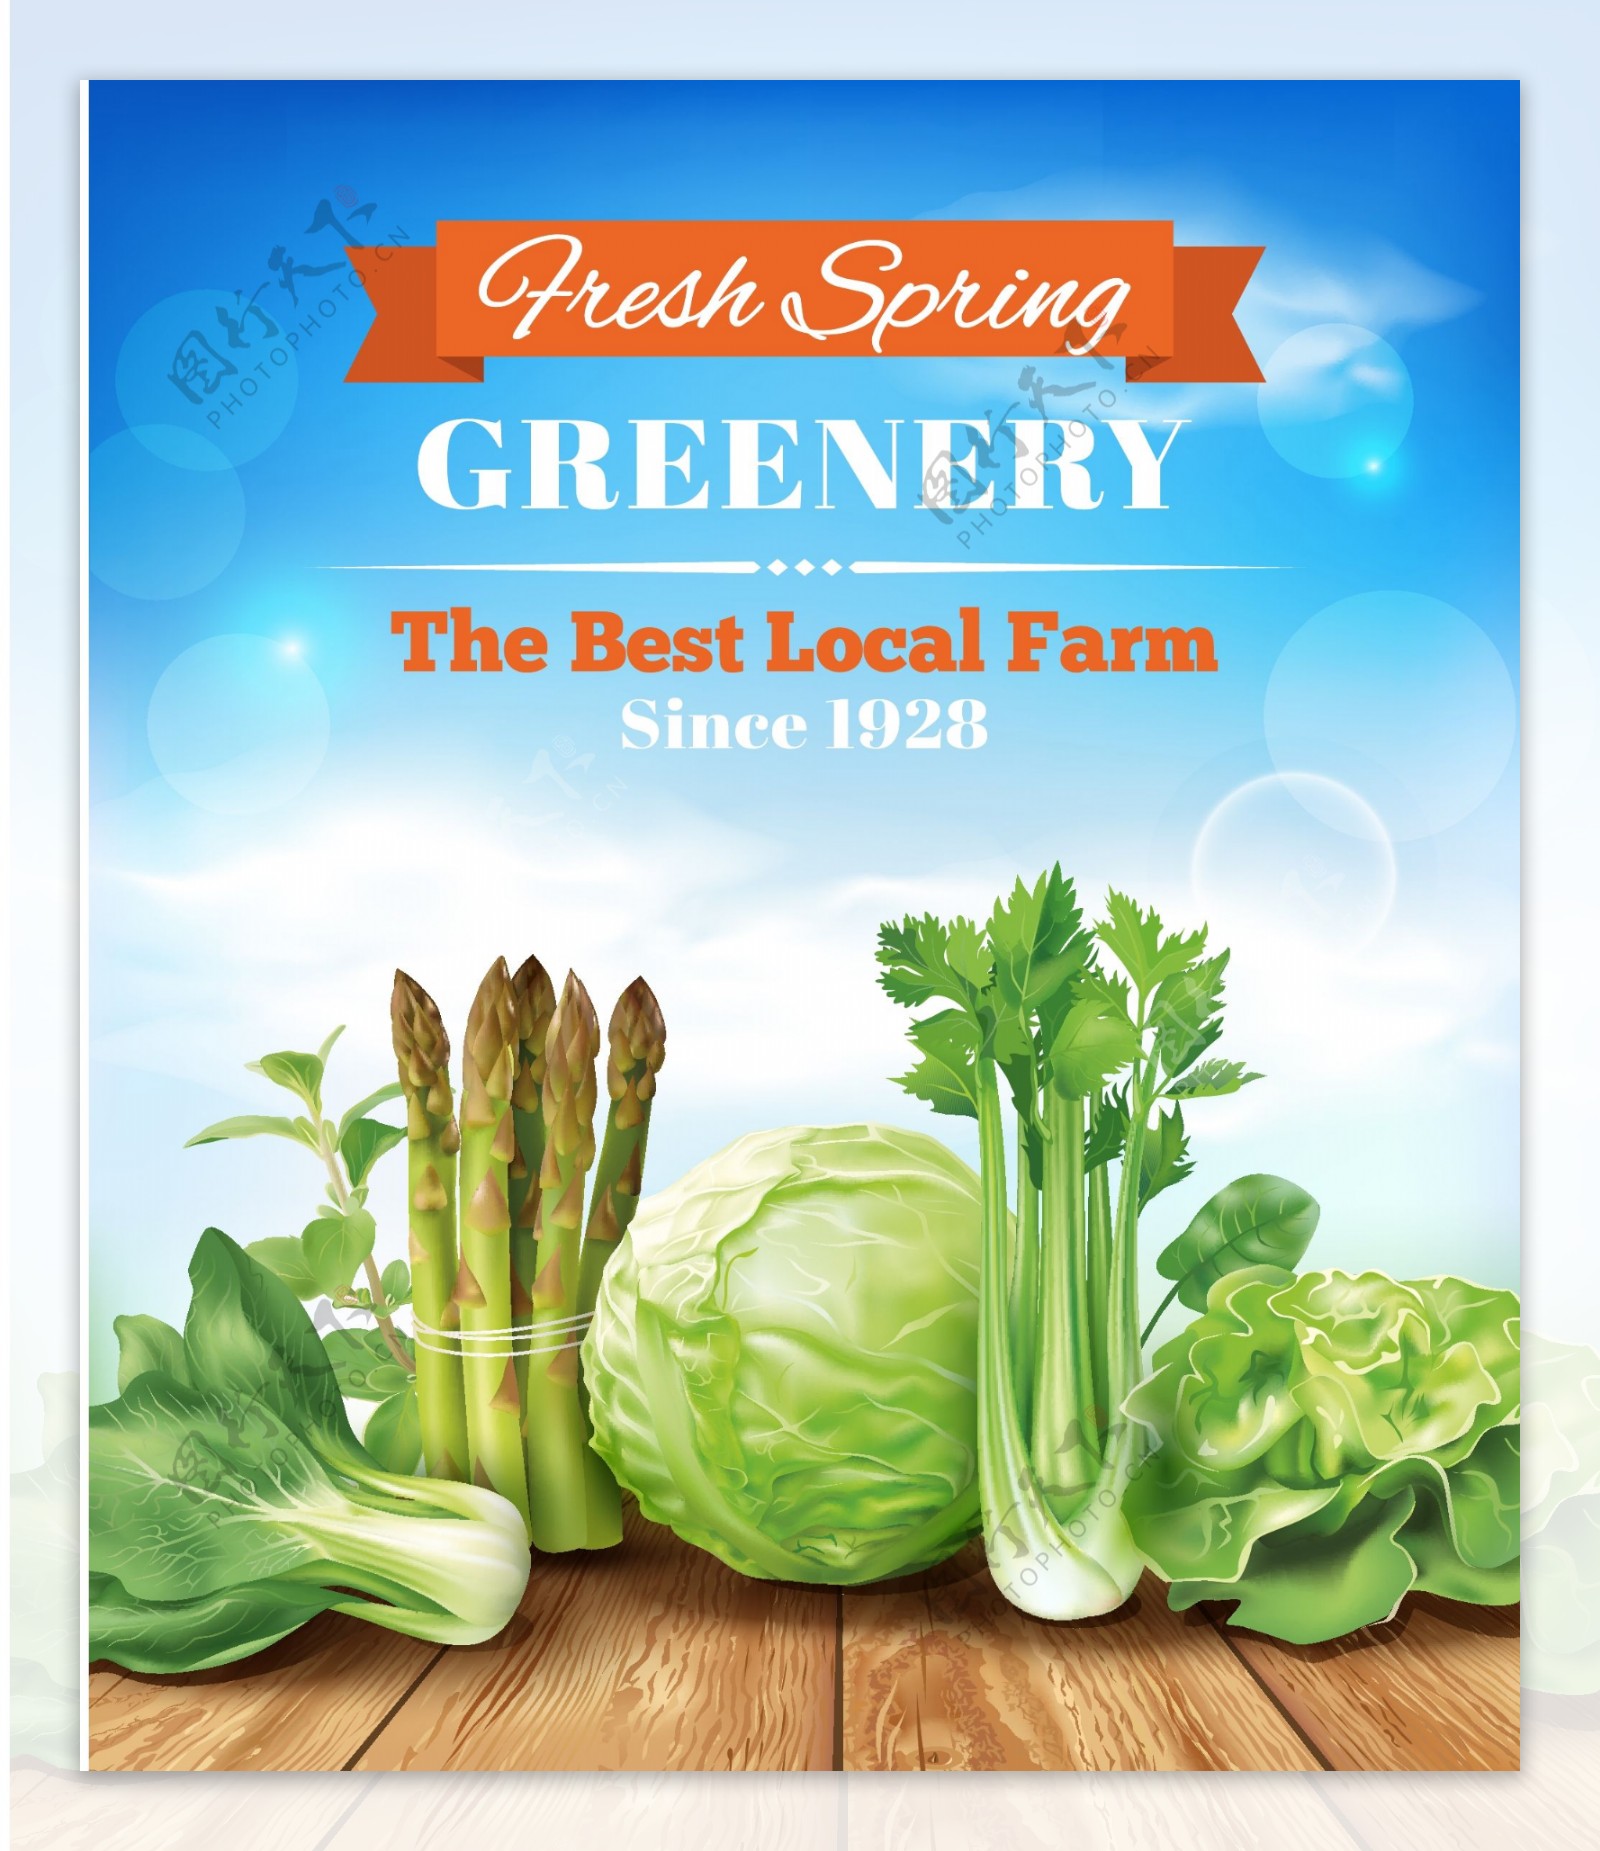 绿色蔬菜矢量宣传海报